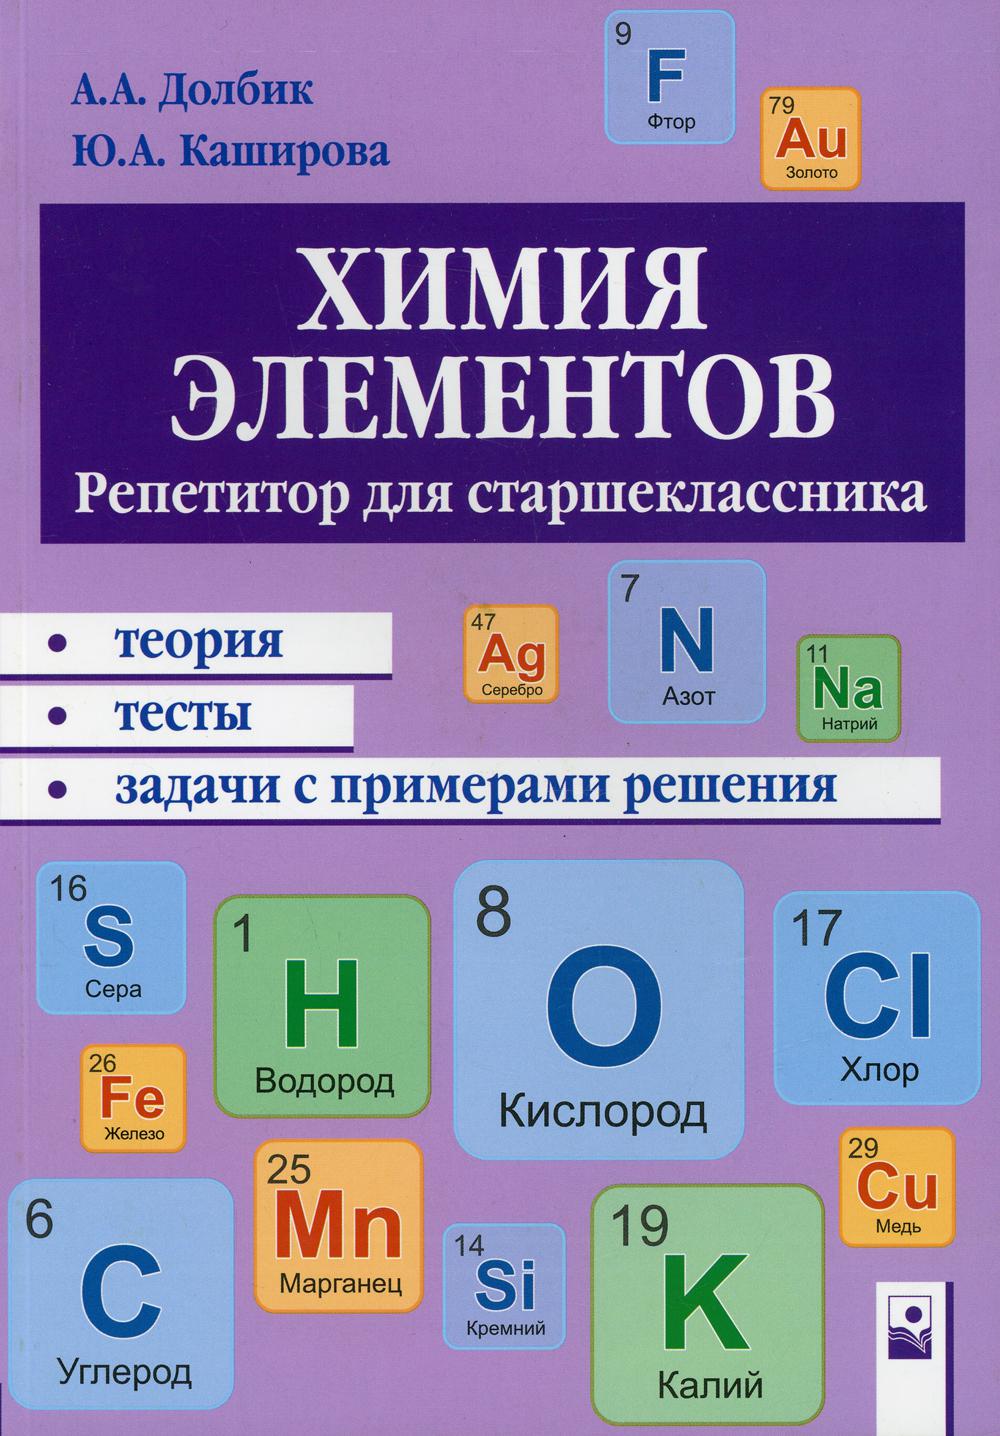 фото Книга химия элементов новое знание